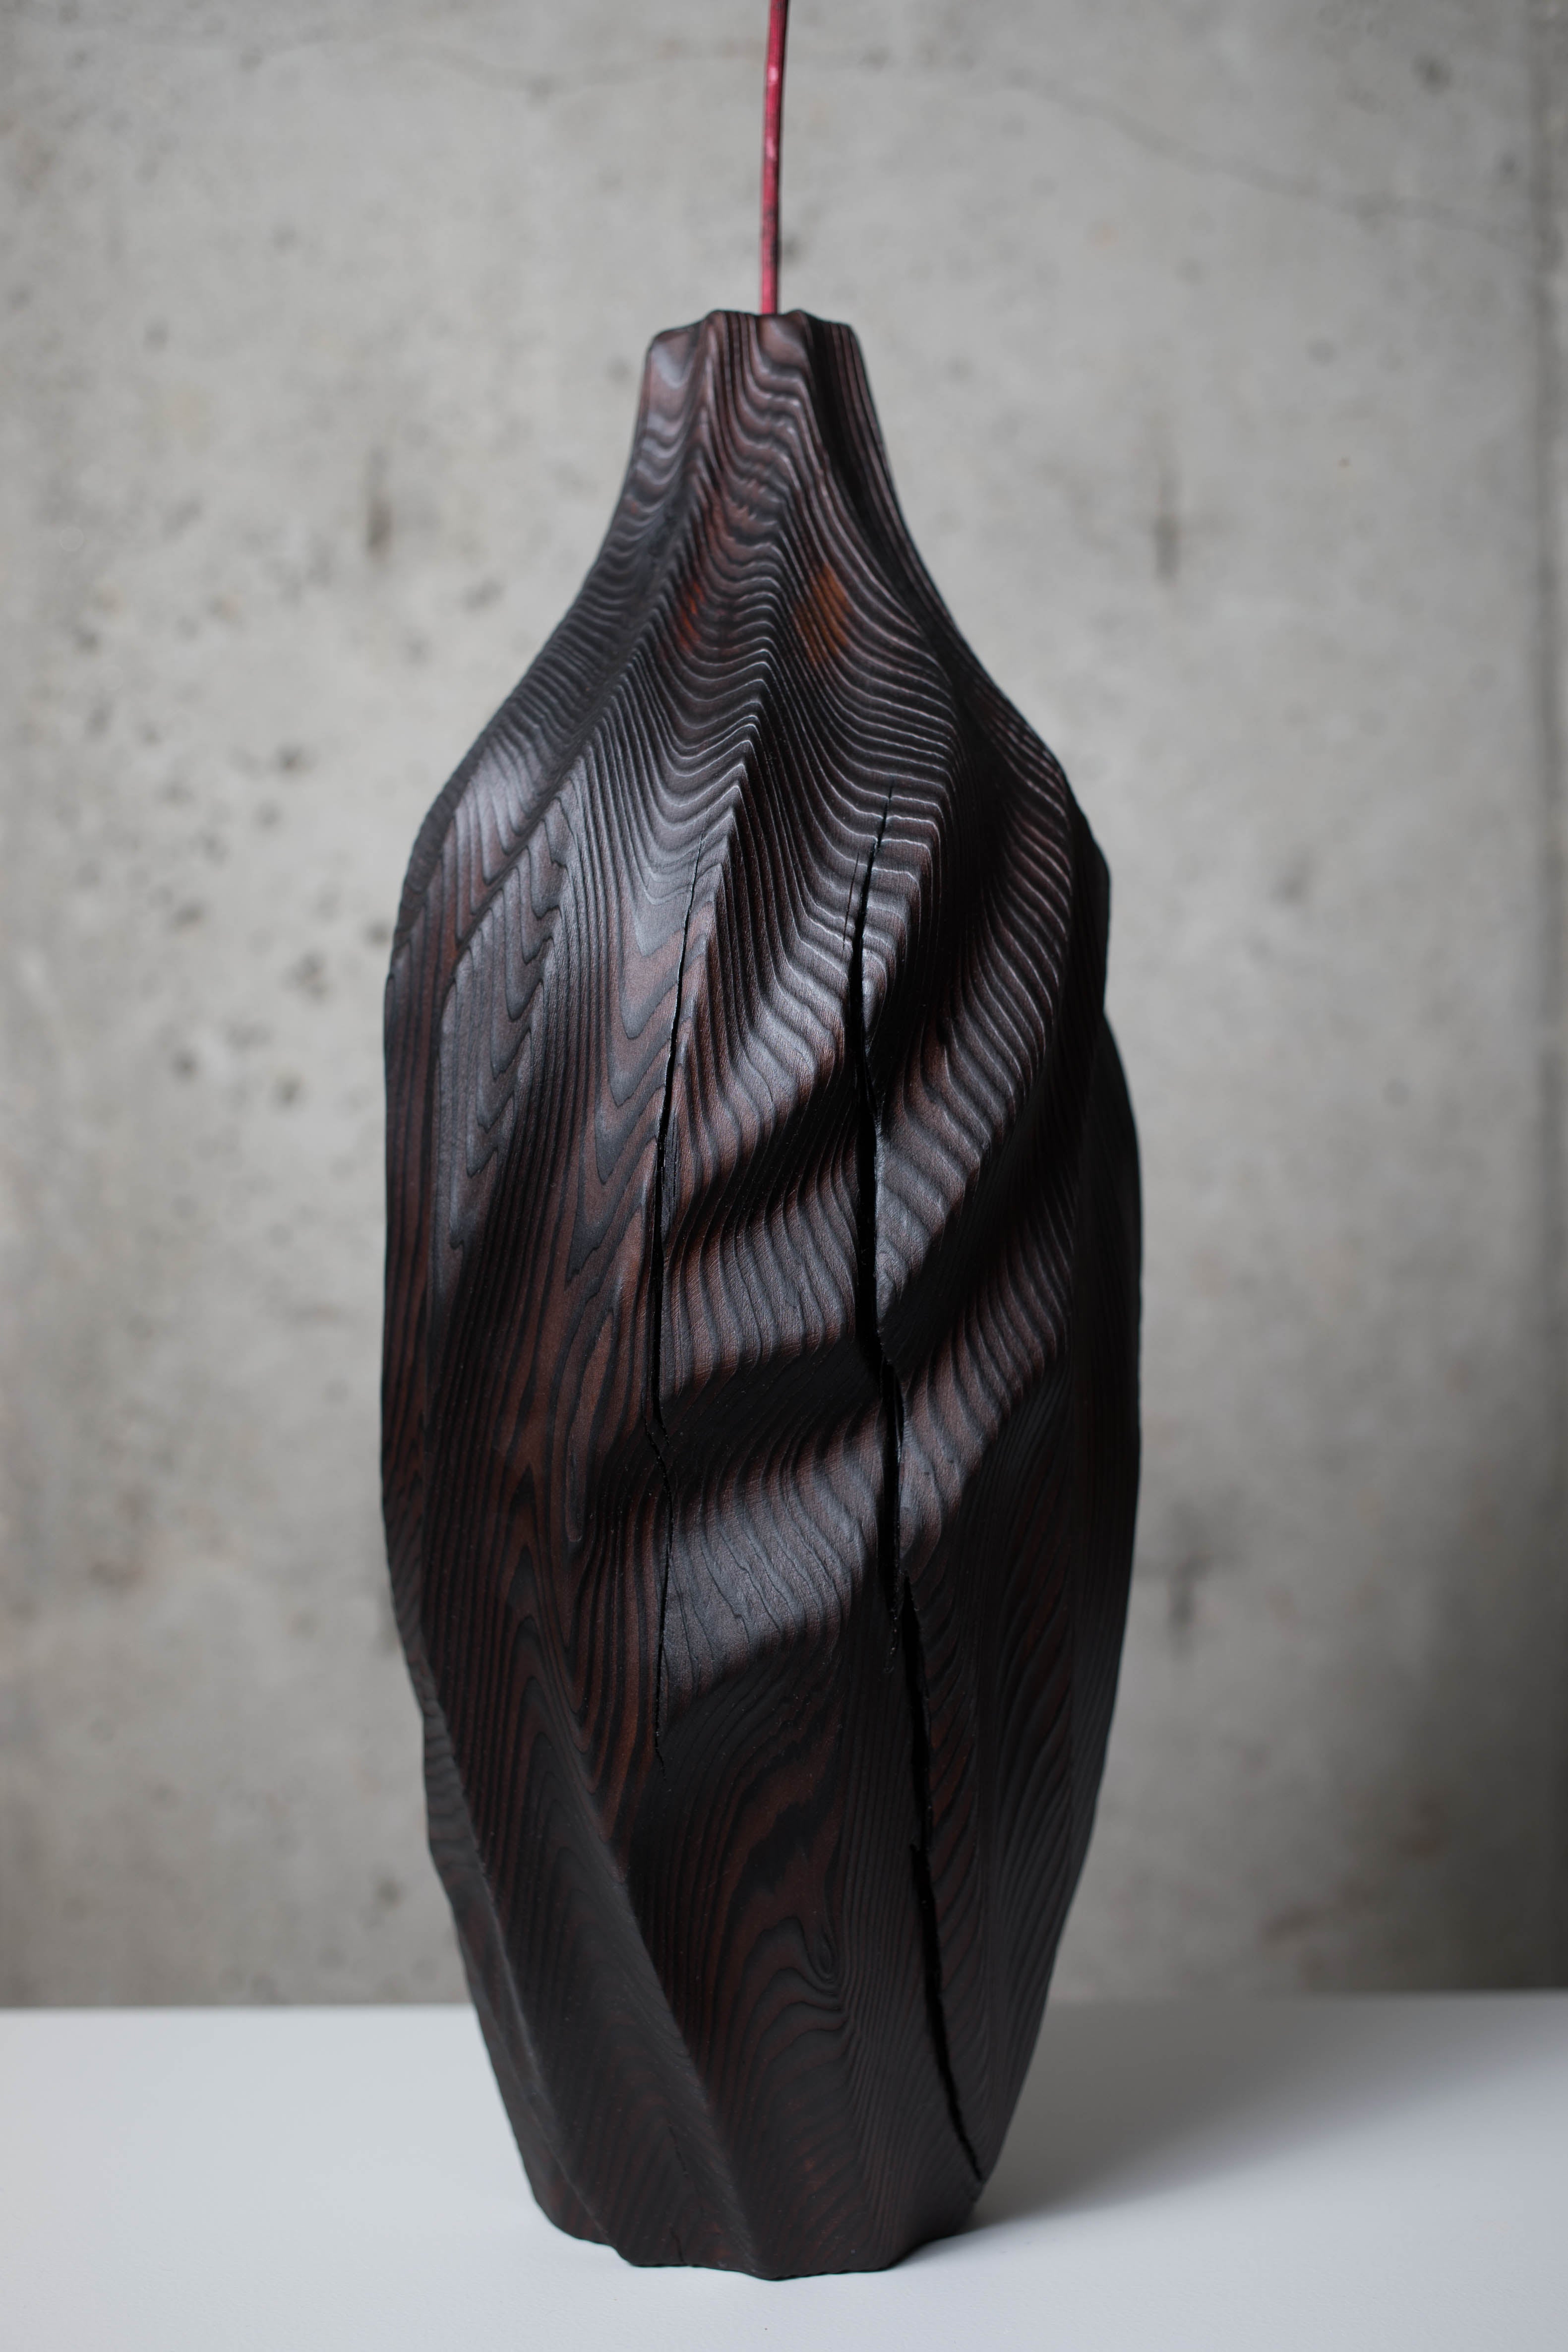 wood turned vase ideas